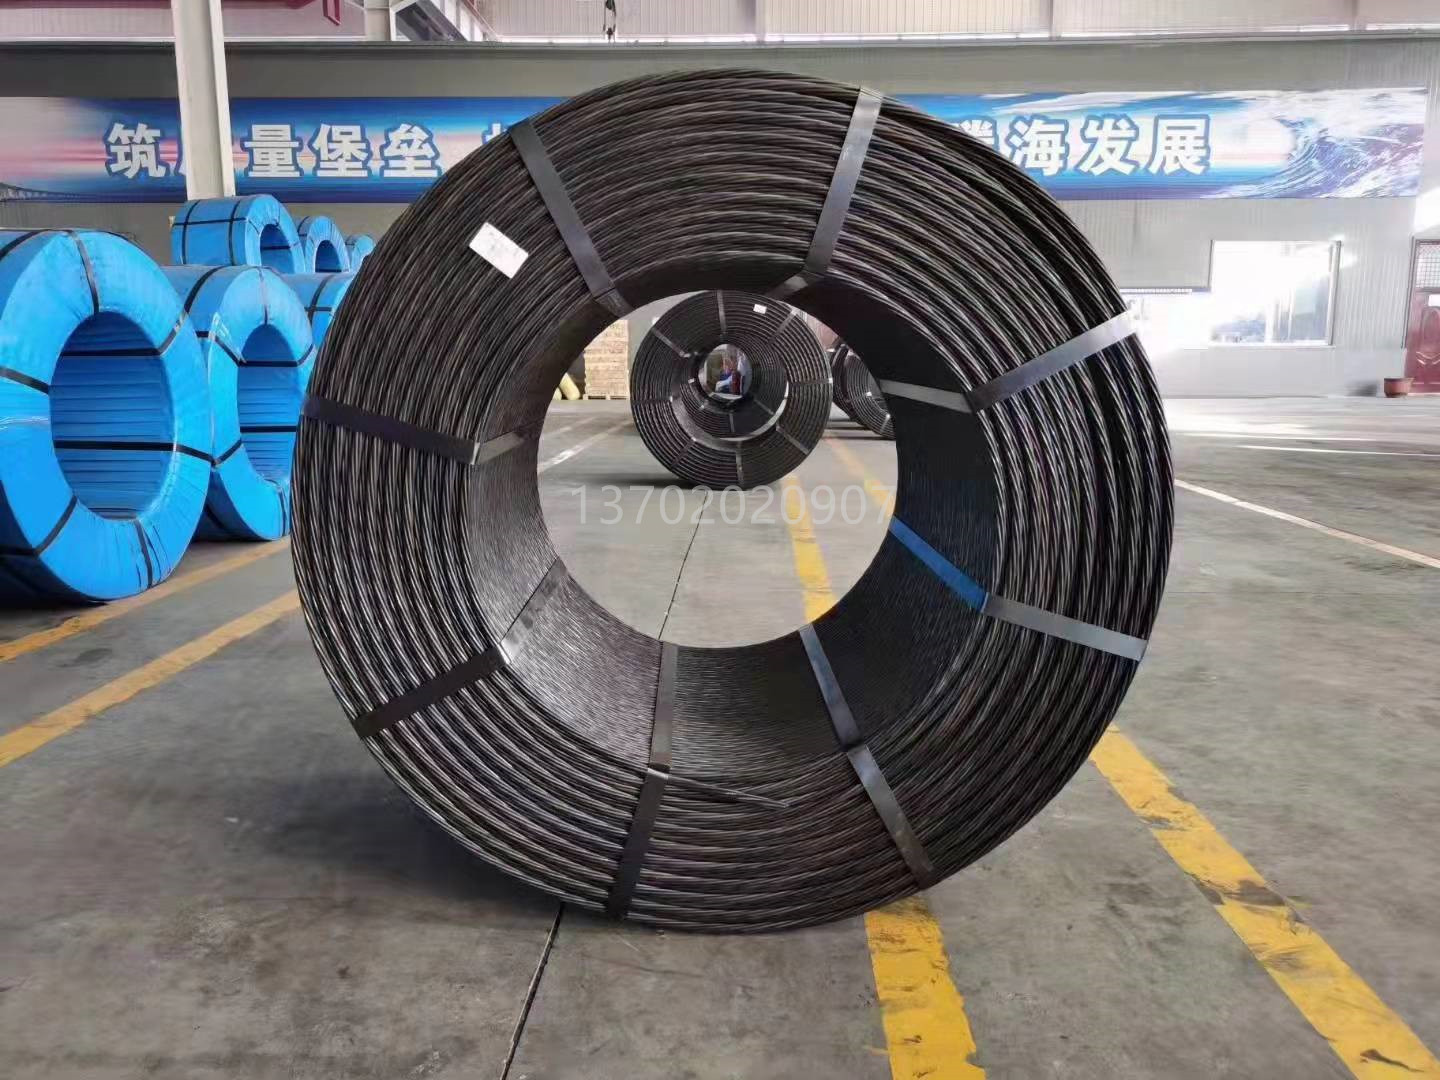 天津腾海 矿用钢绞线 钢绞线厂家 预应力钢绞线